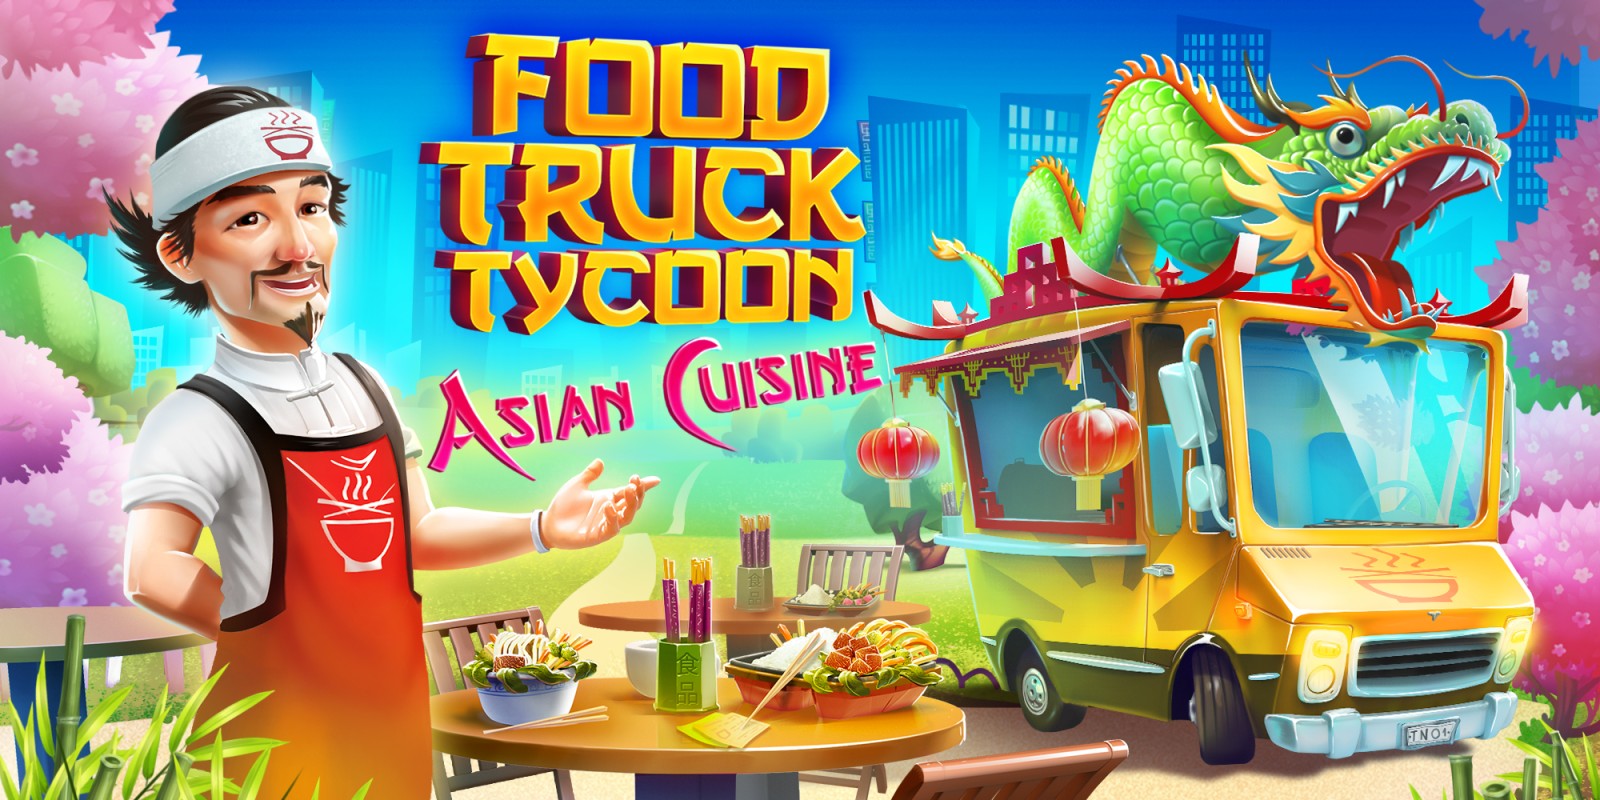 profesional Risa Anunciante Food Truck Tycoon - Asian Cuisine | Programas descargables Nintendo Switch  | Juegos | Nintendo